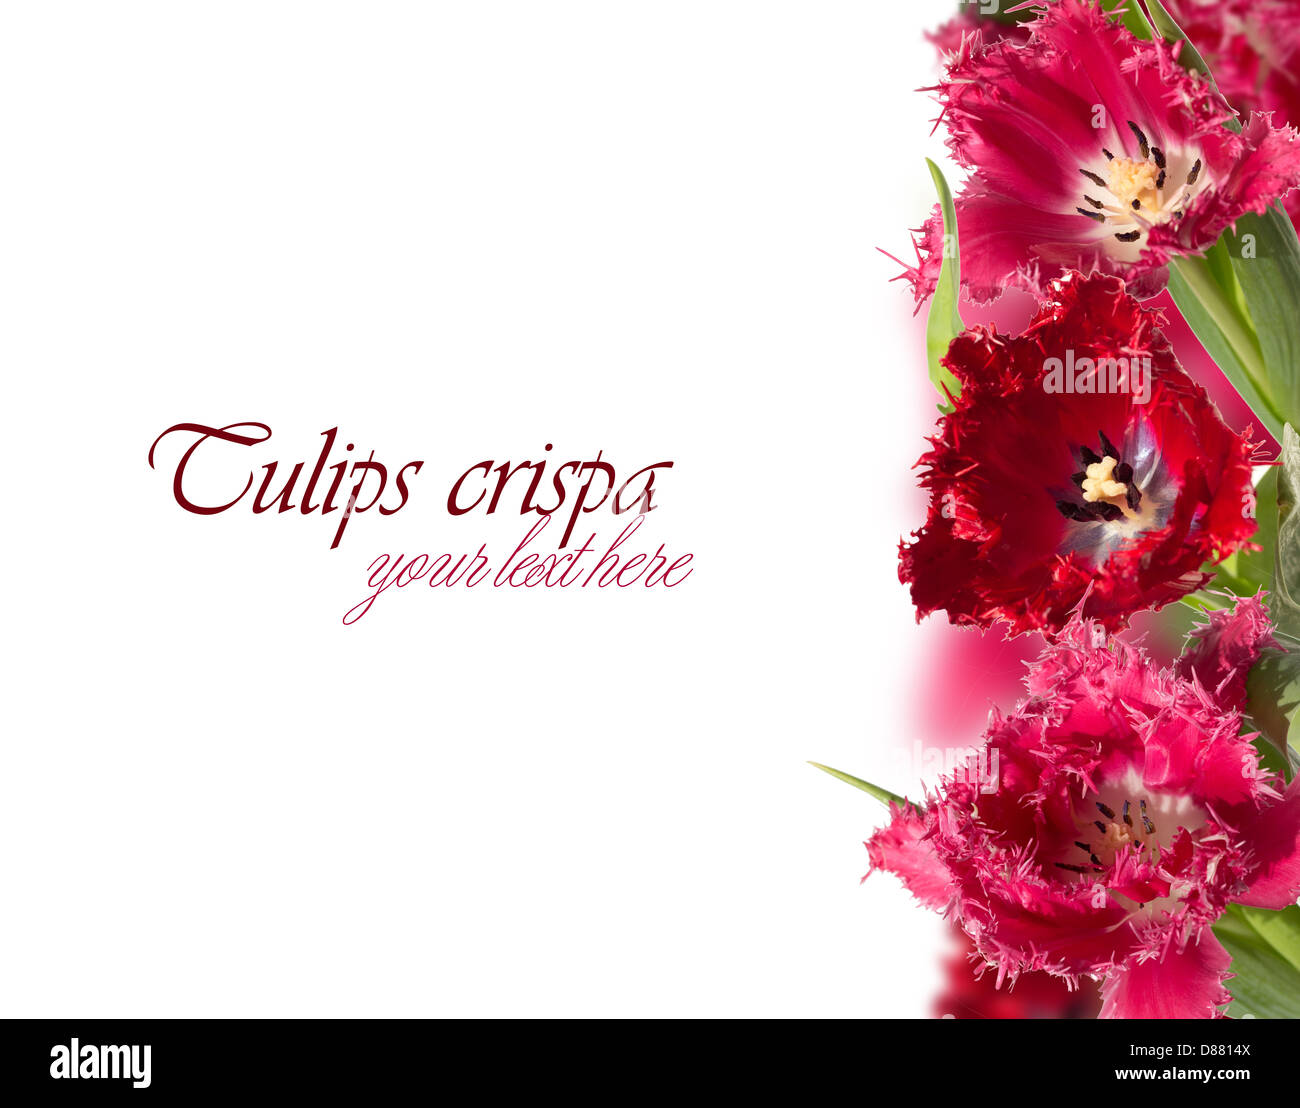 Rosa und rote Tulpen (Crispa) Collage auf der rechten Seite mit Fransen Stockfoto